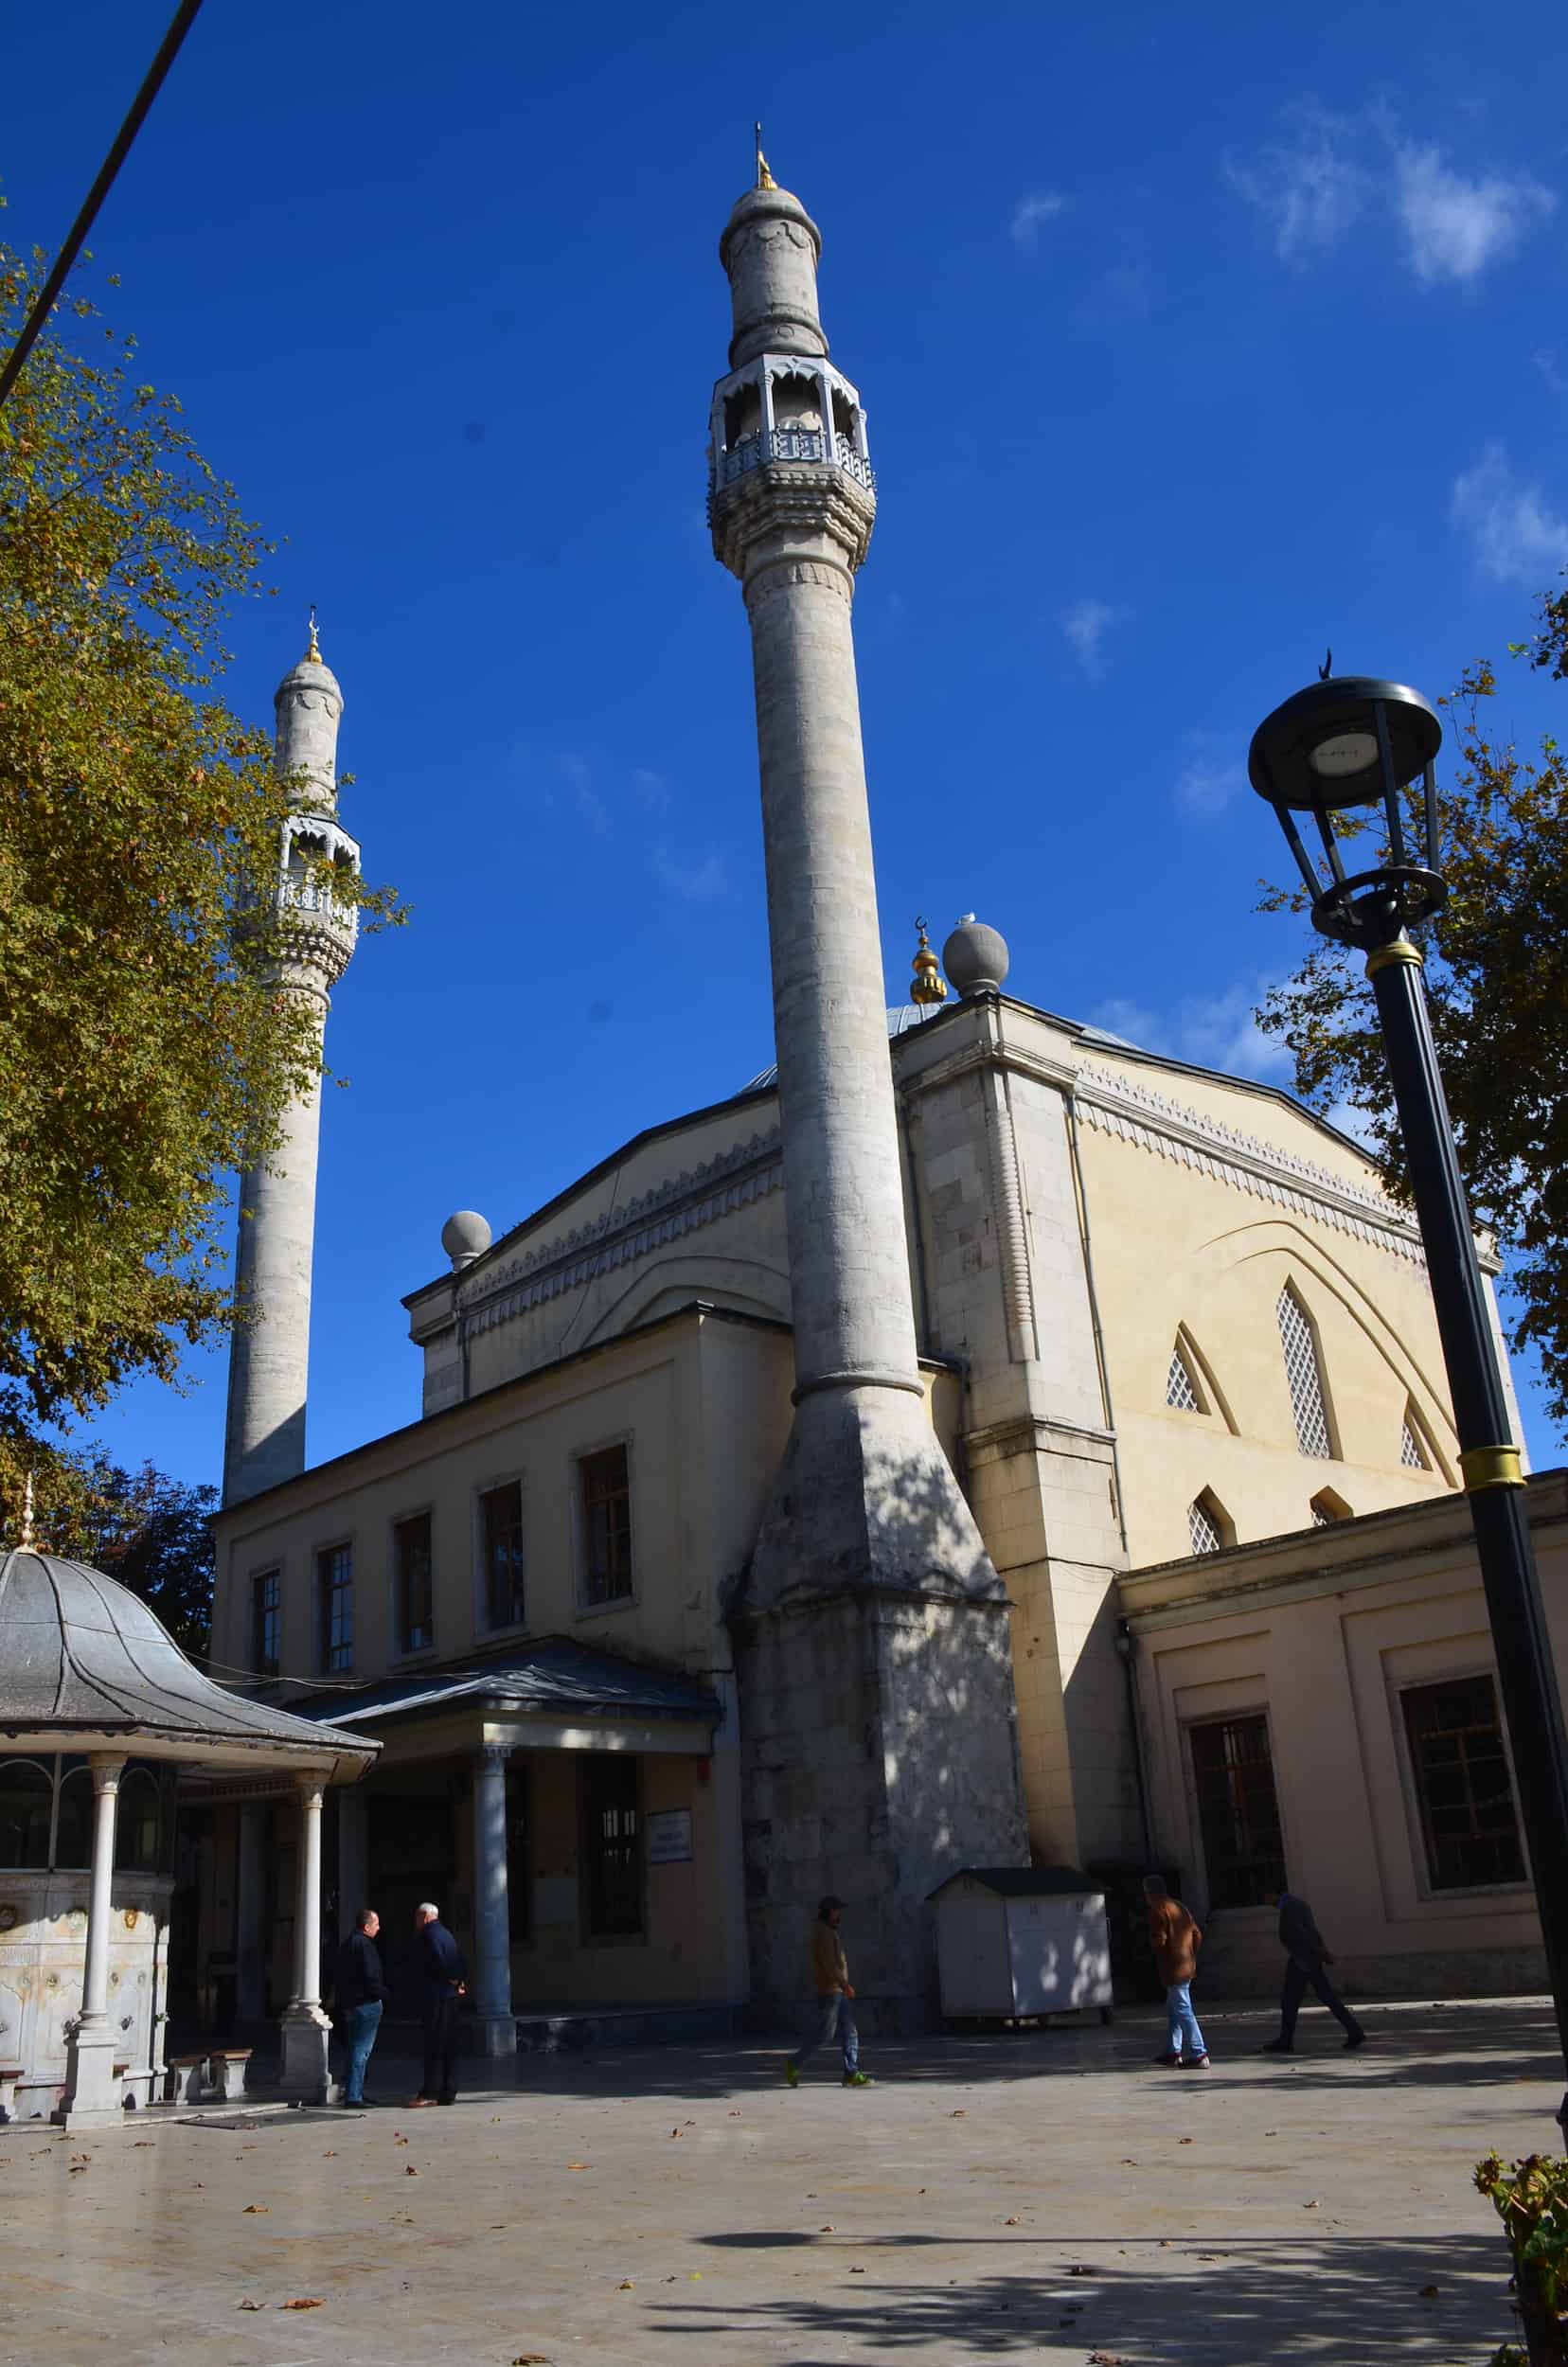 Güzelce Kasım Pasha Mosque in Kasımpaşa, Istanbul, Turkey